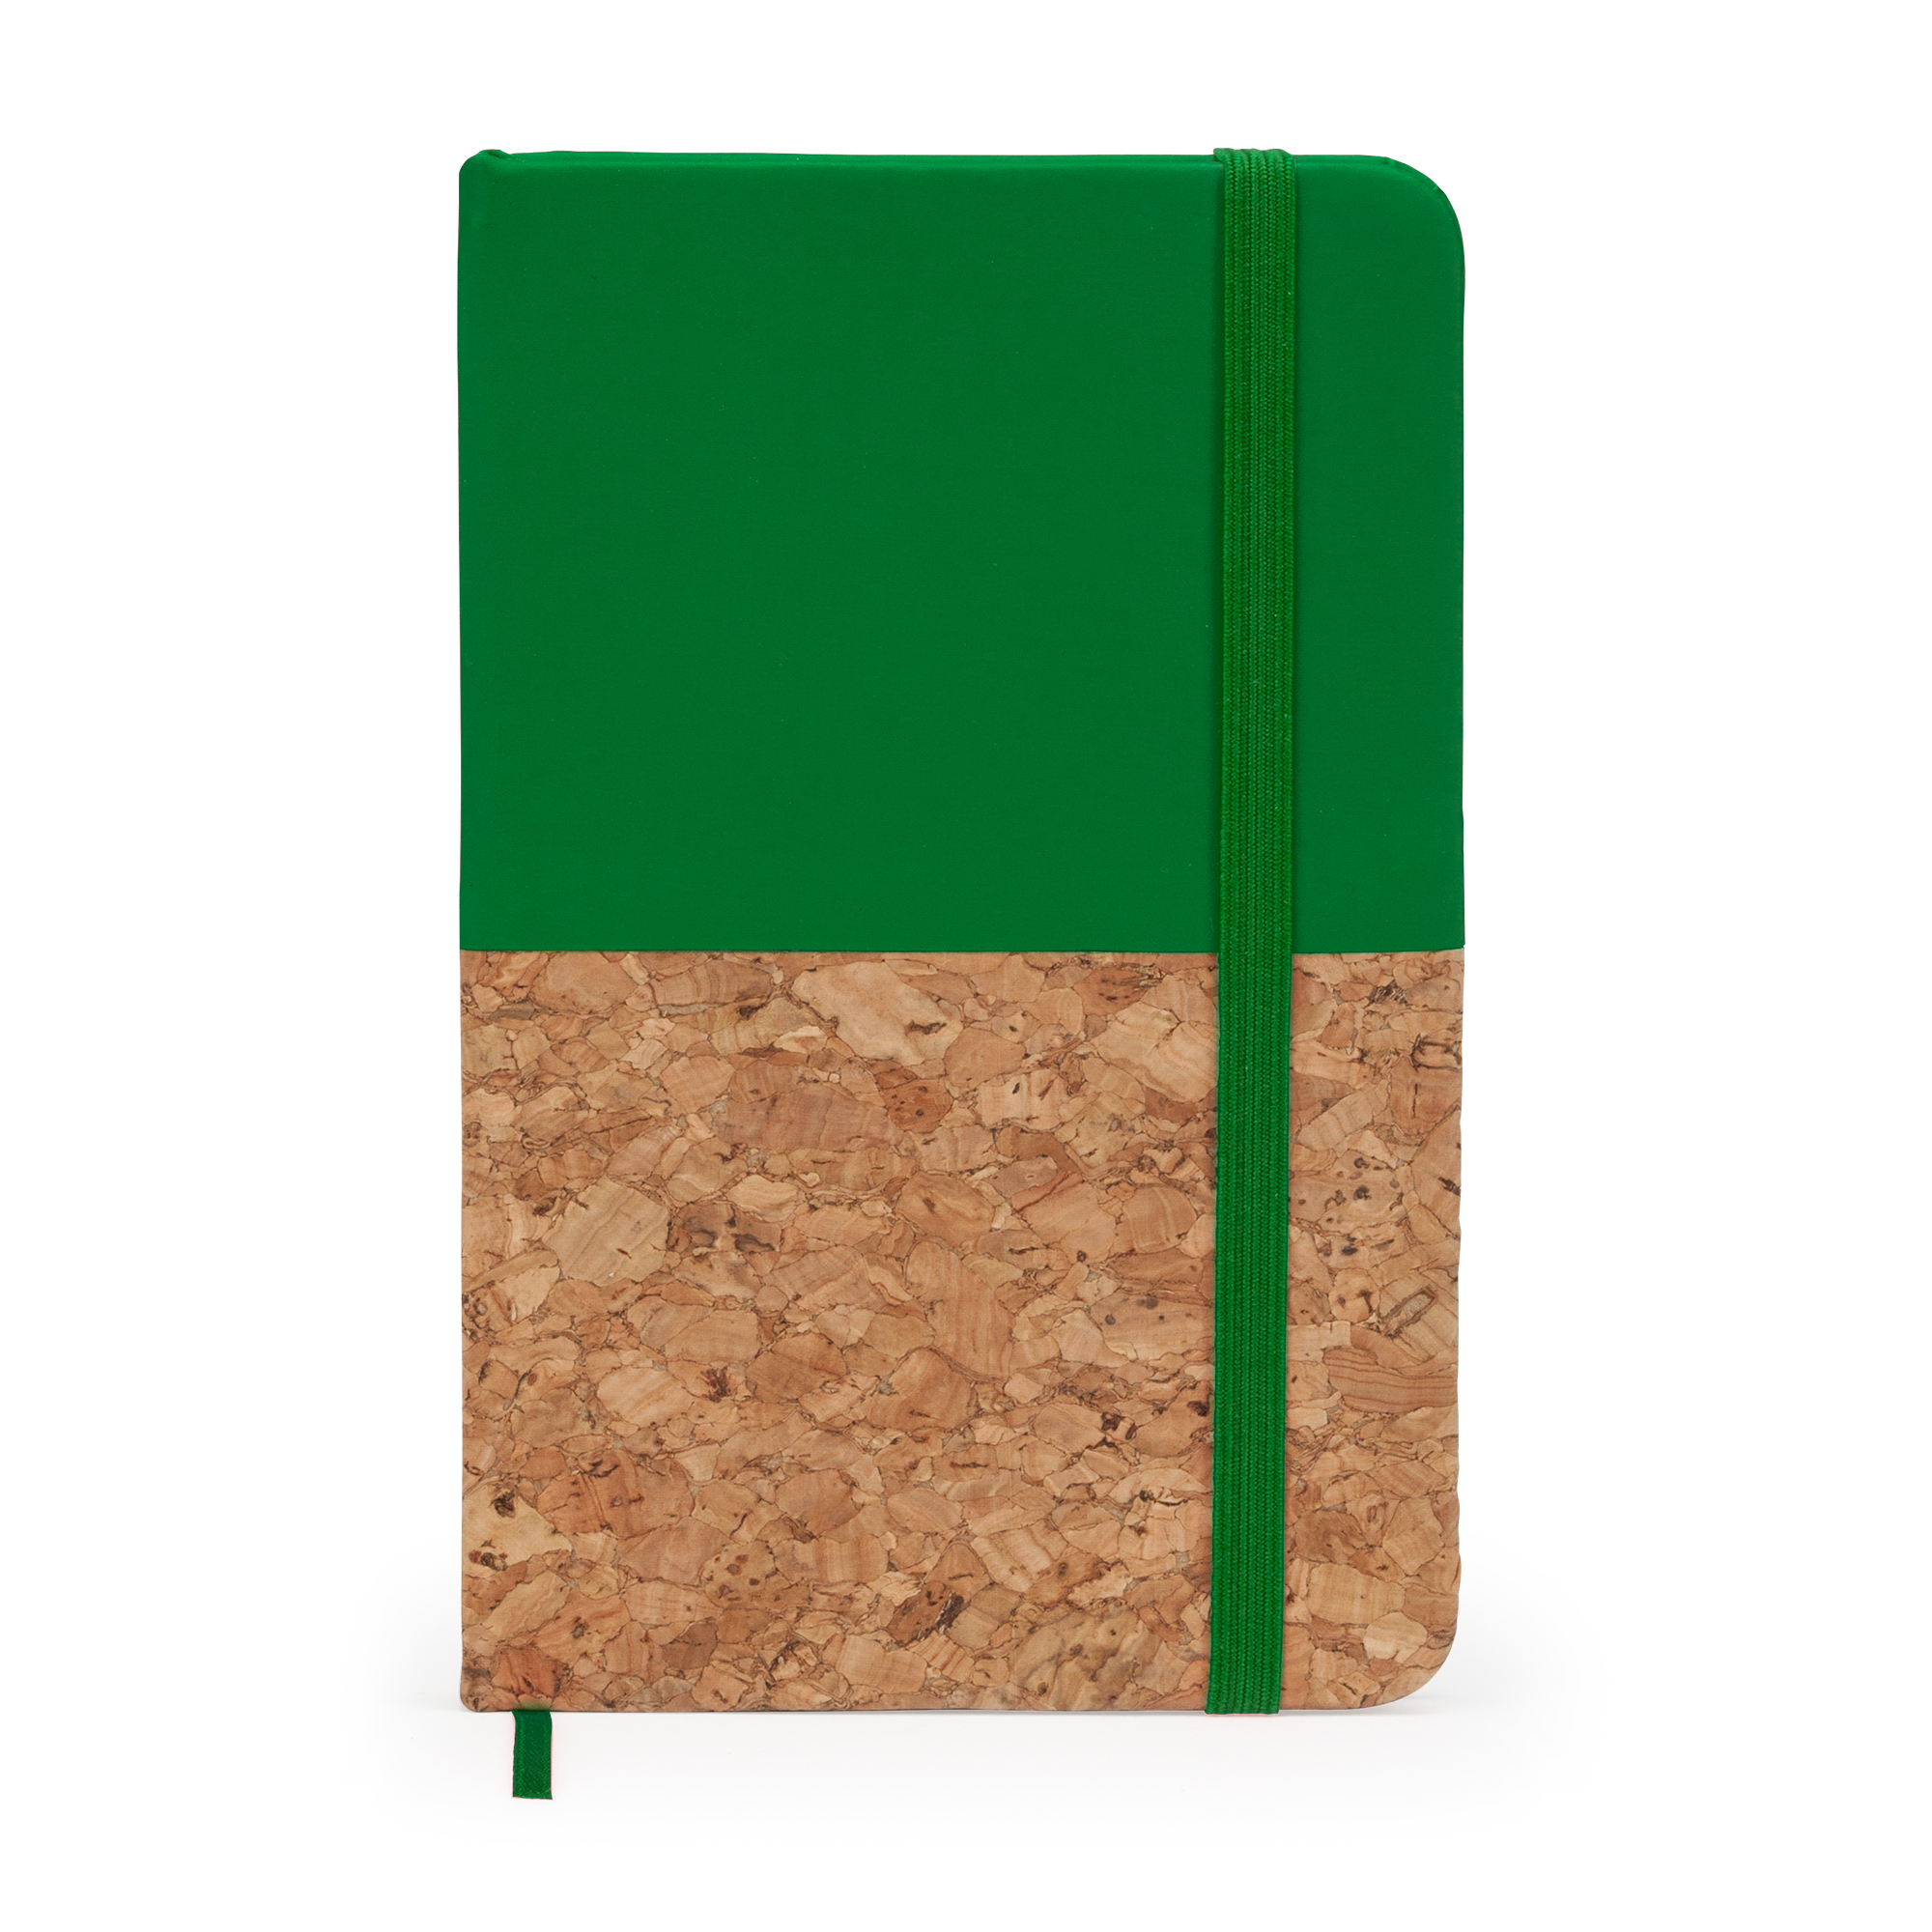 2092-porto-blocco-note-formato-a6-con-copertina-rigida-in-cartone-riciclato-verde-felce.jpg